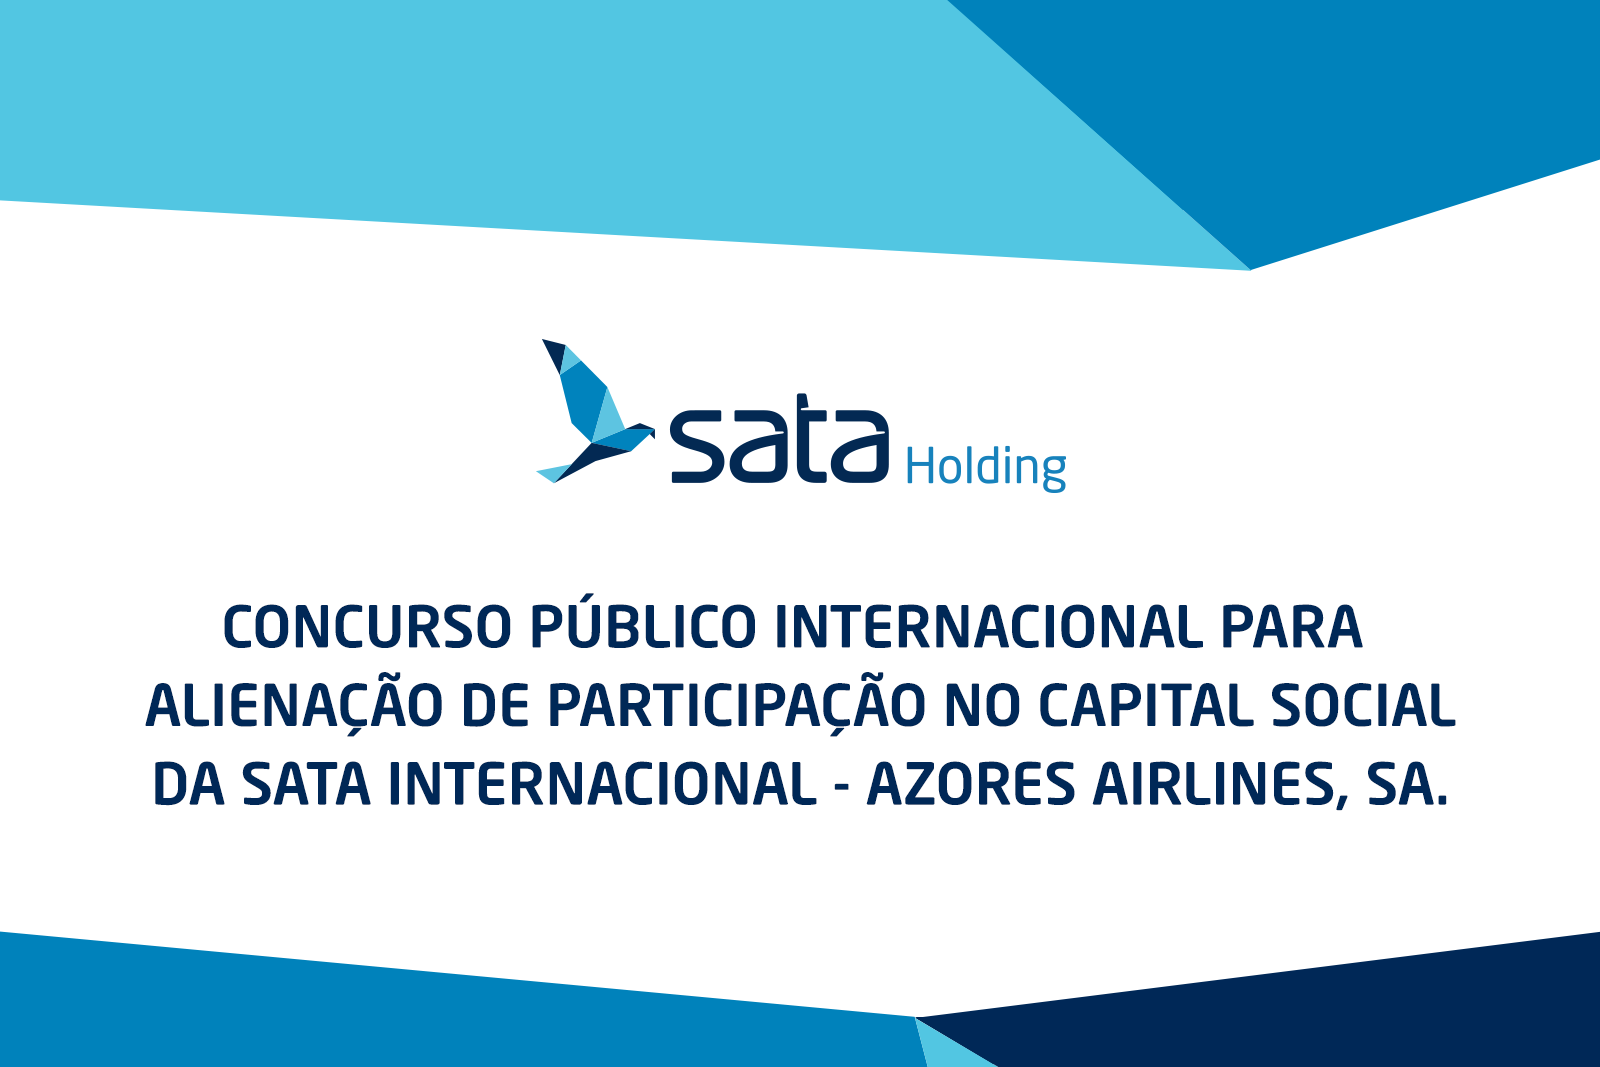 Concurso público internacional para alienação de participação no capital social da SATA Internacional - Azores Airlines, SA.